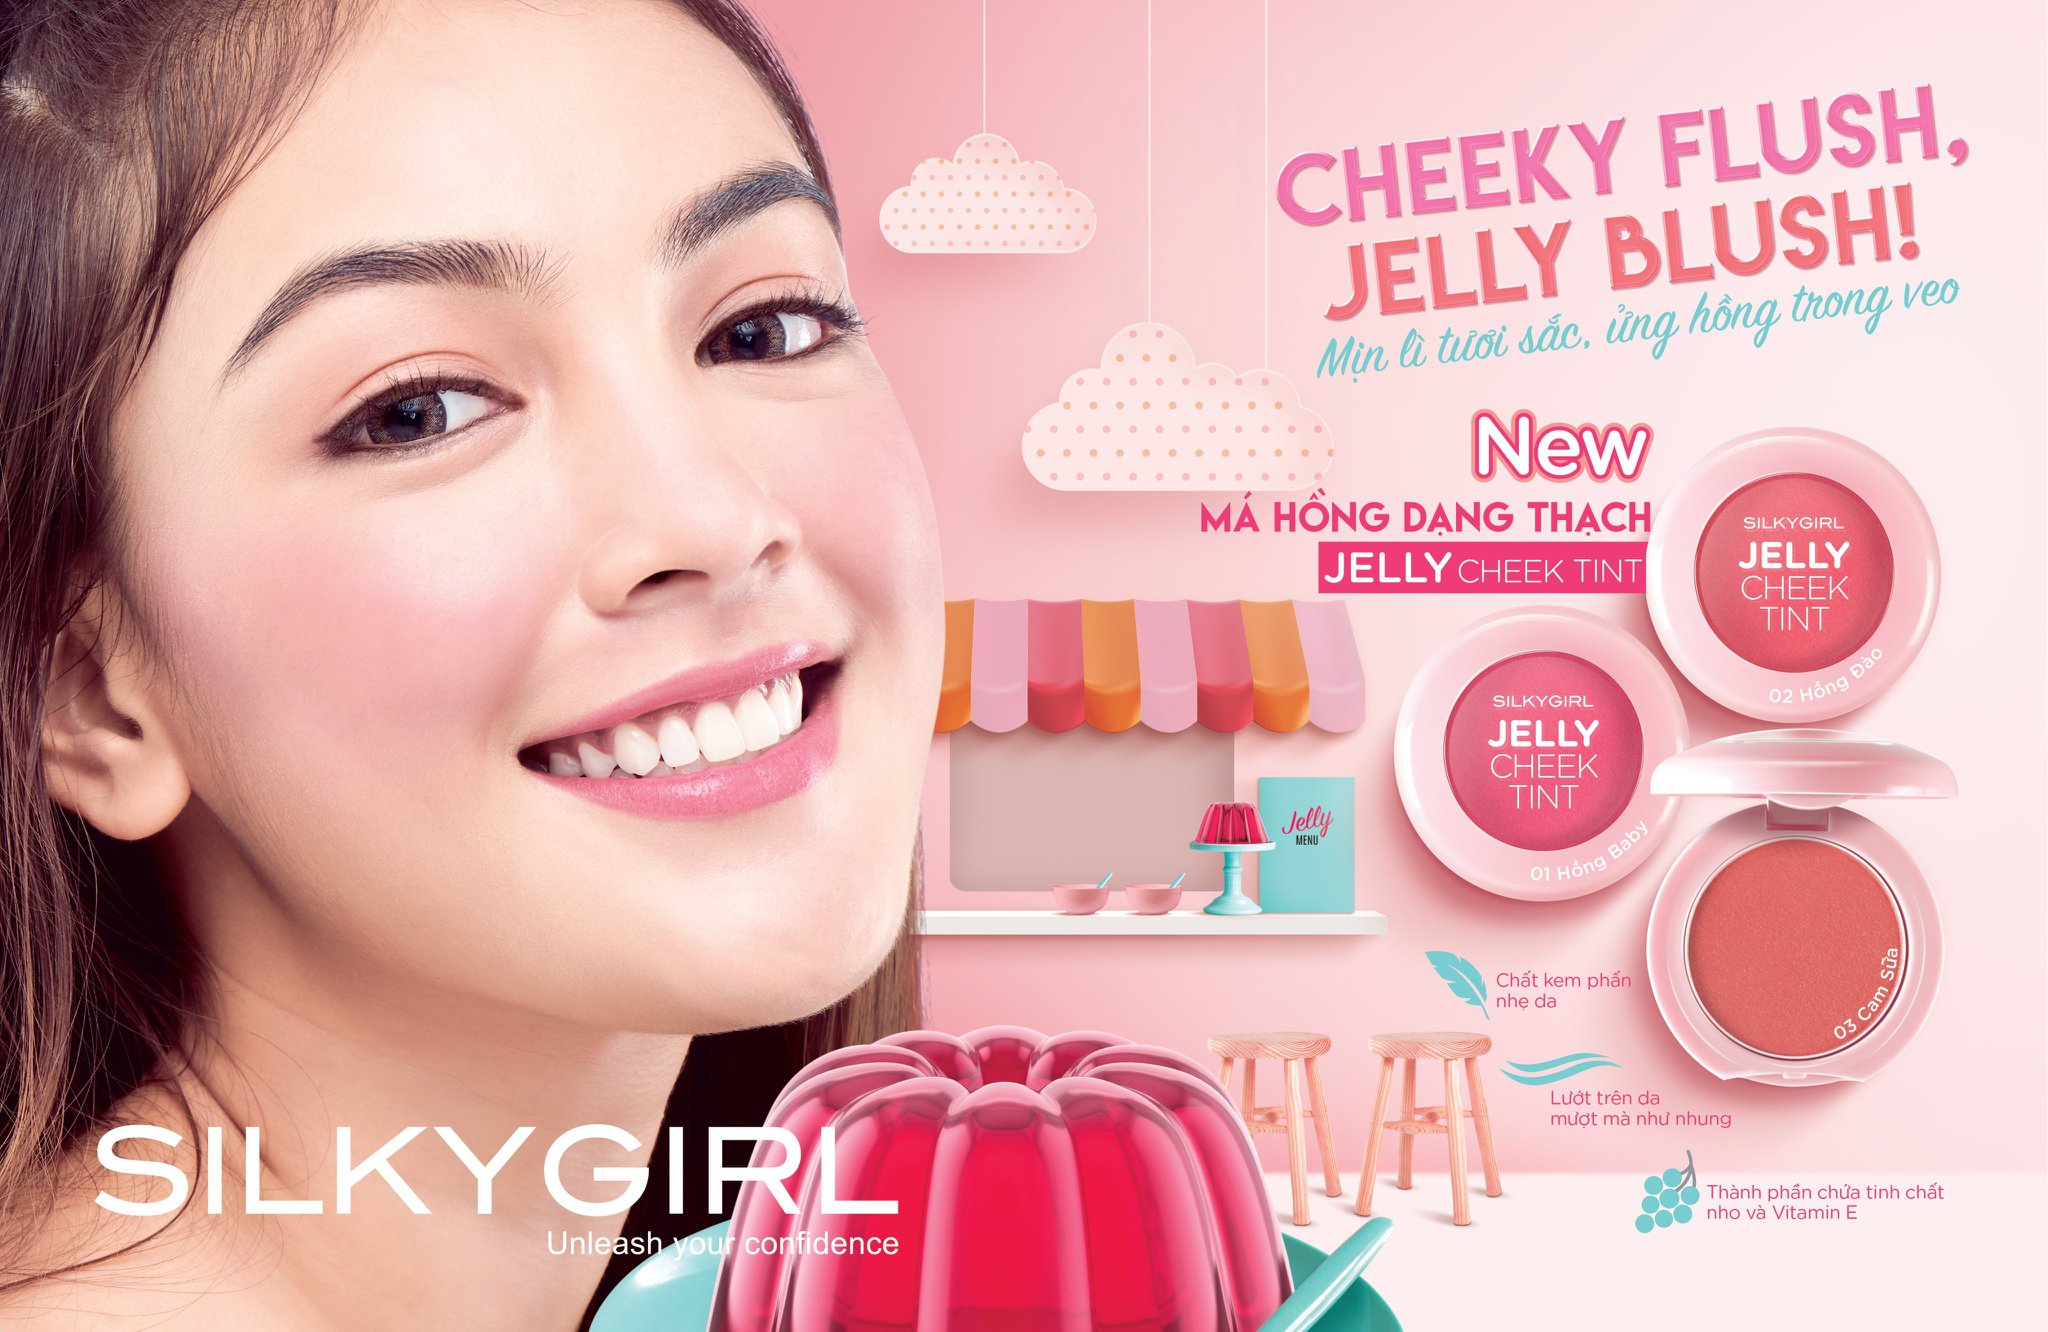 Sản phẩm má hồng này của thương hiệu Silkygirl. Đây là một trong những thương hiệu mỹ phẩm nổi tiếng nhất tại Singapore và Malaysia.